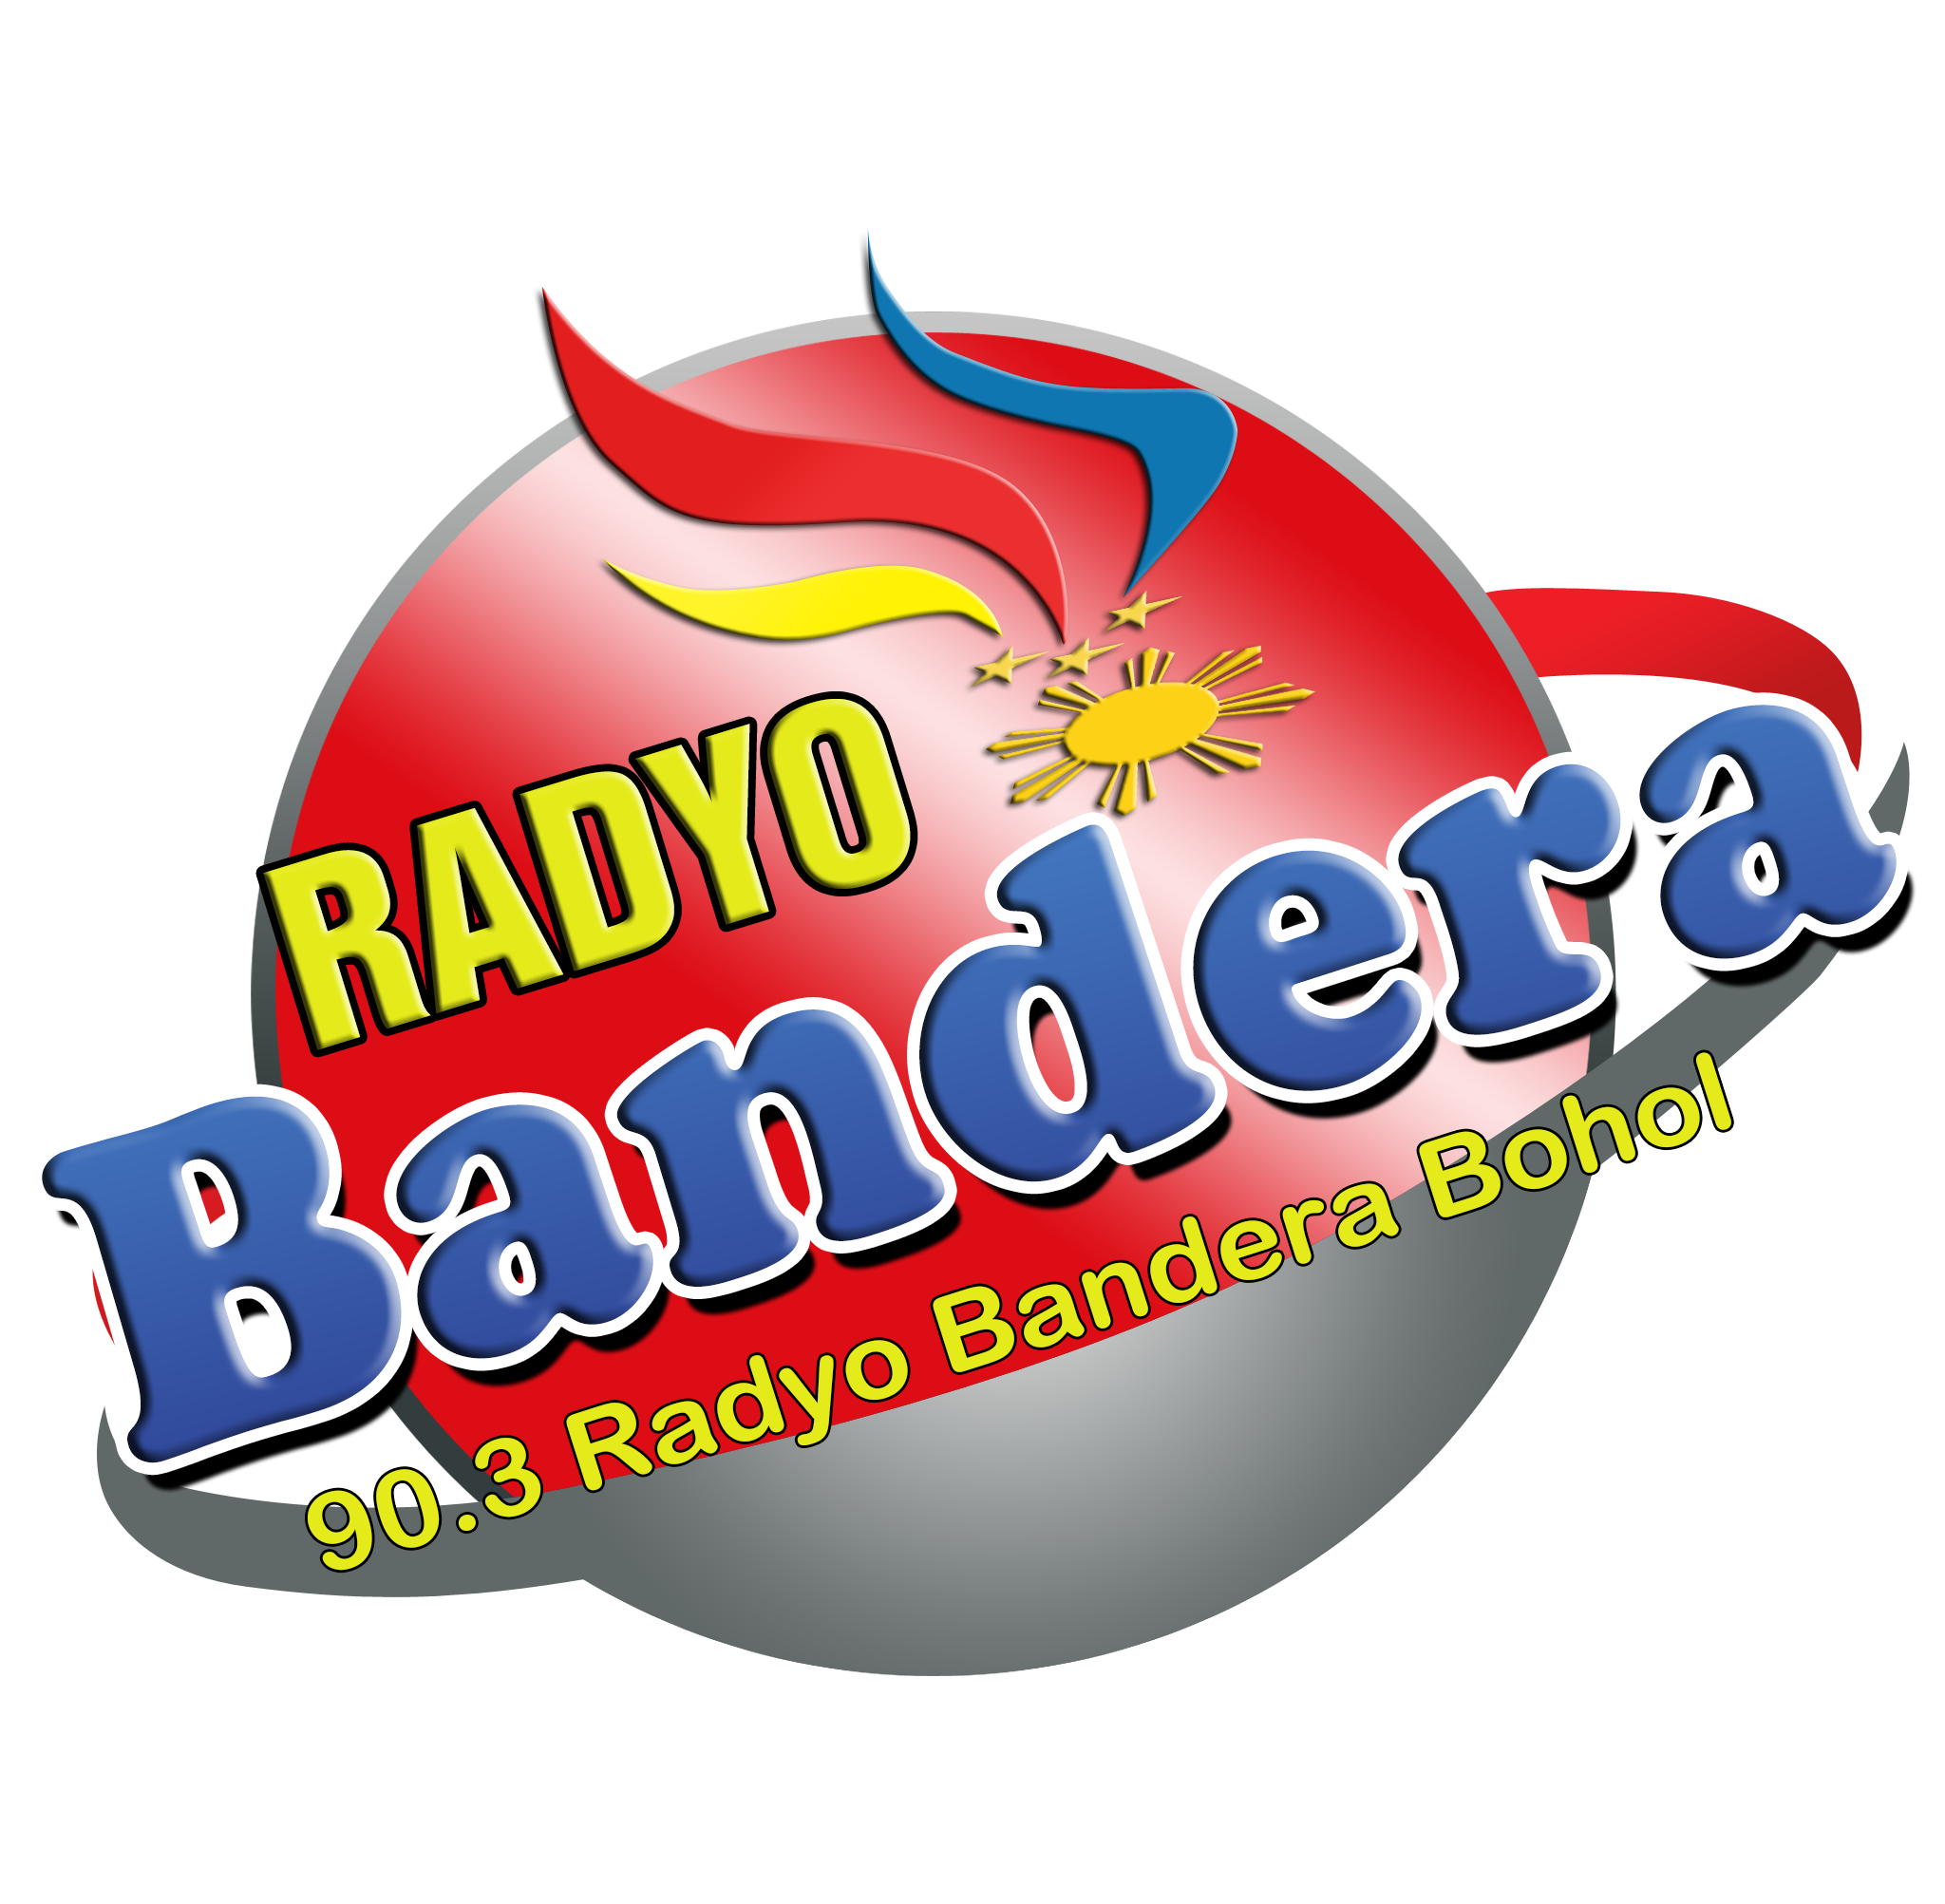 90.3 Radyo Bandera Bohol